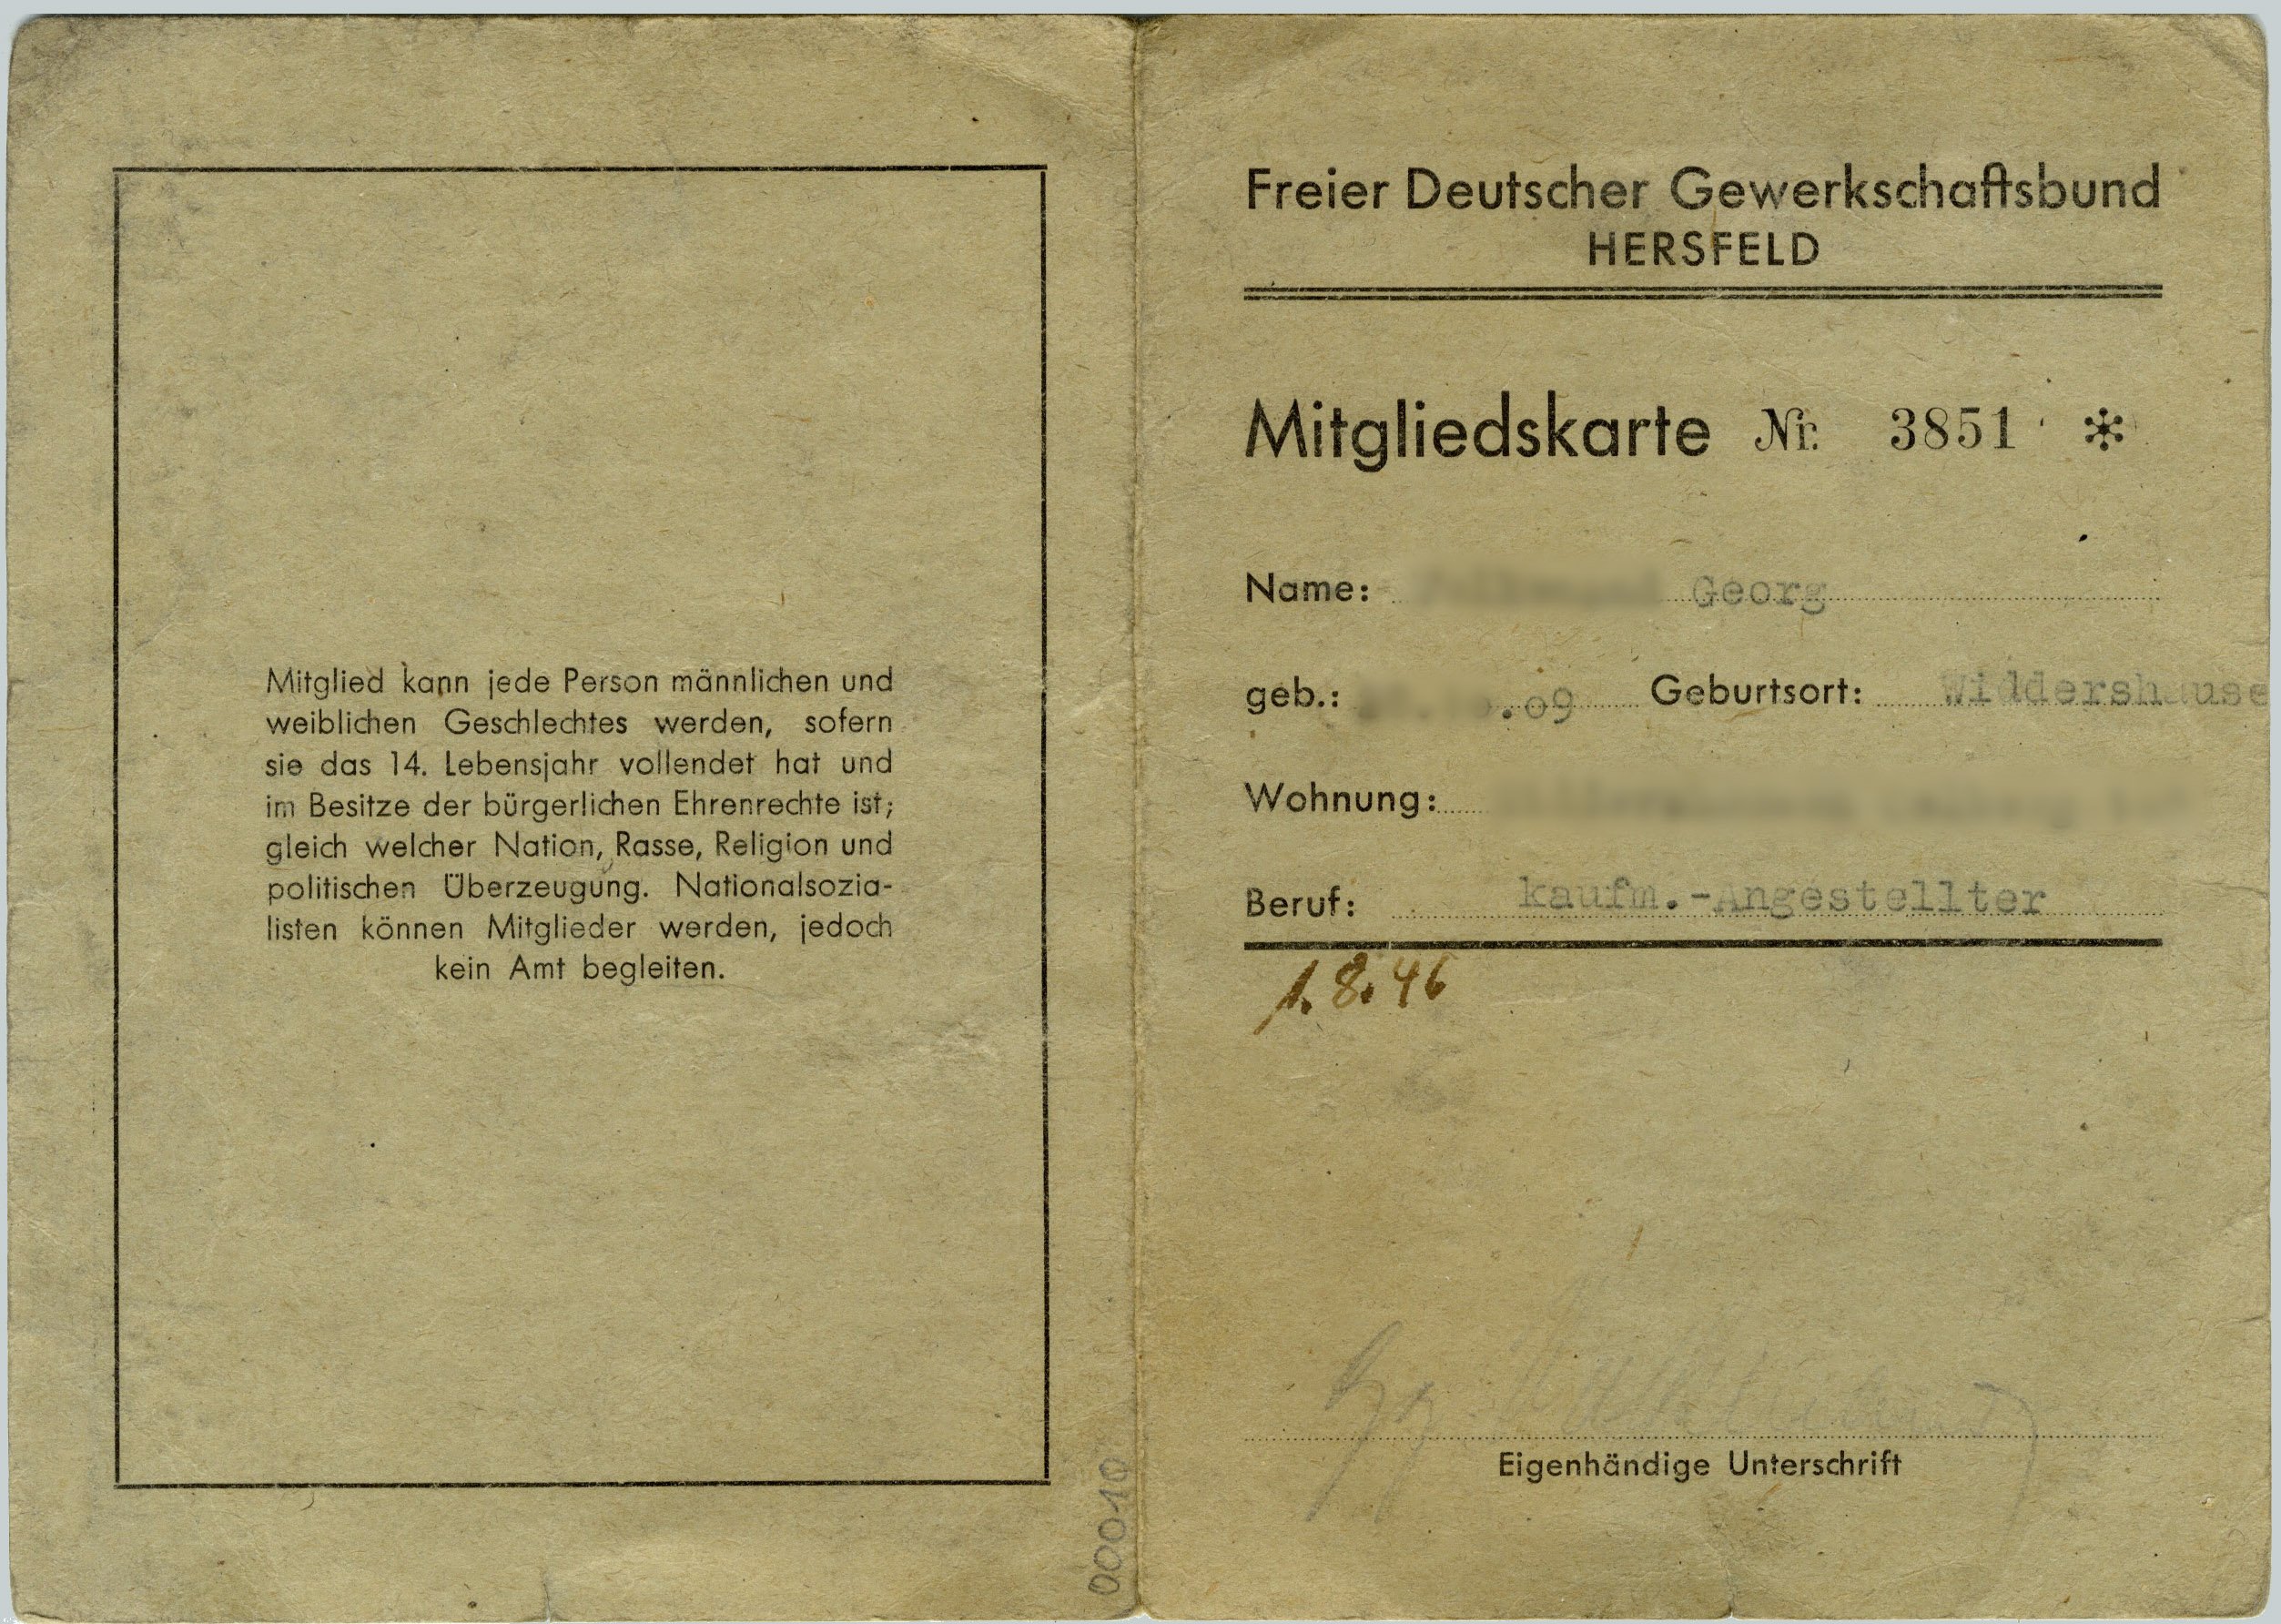 Mitgliedskarte 'Freier Deutscher Gewerkschaftsbund Hersfeld' Nr. 3851 (Werra-Kalibergbau-Museum, Heringen/W. CC BY-NC-SA)